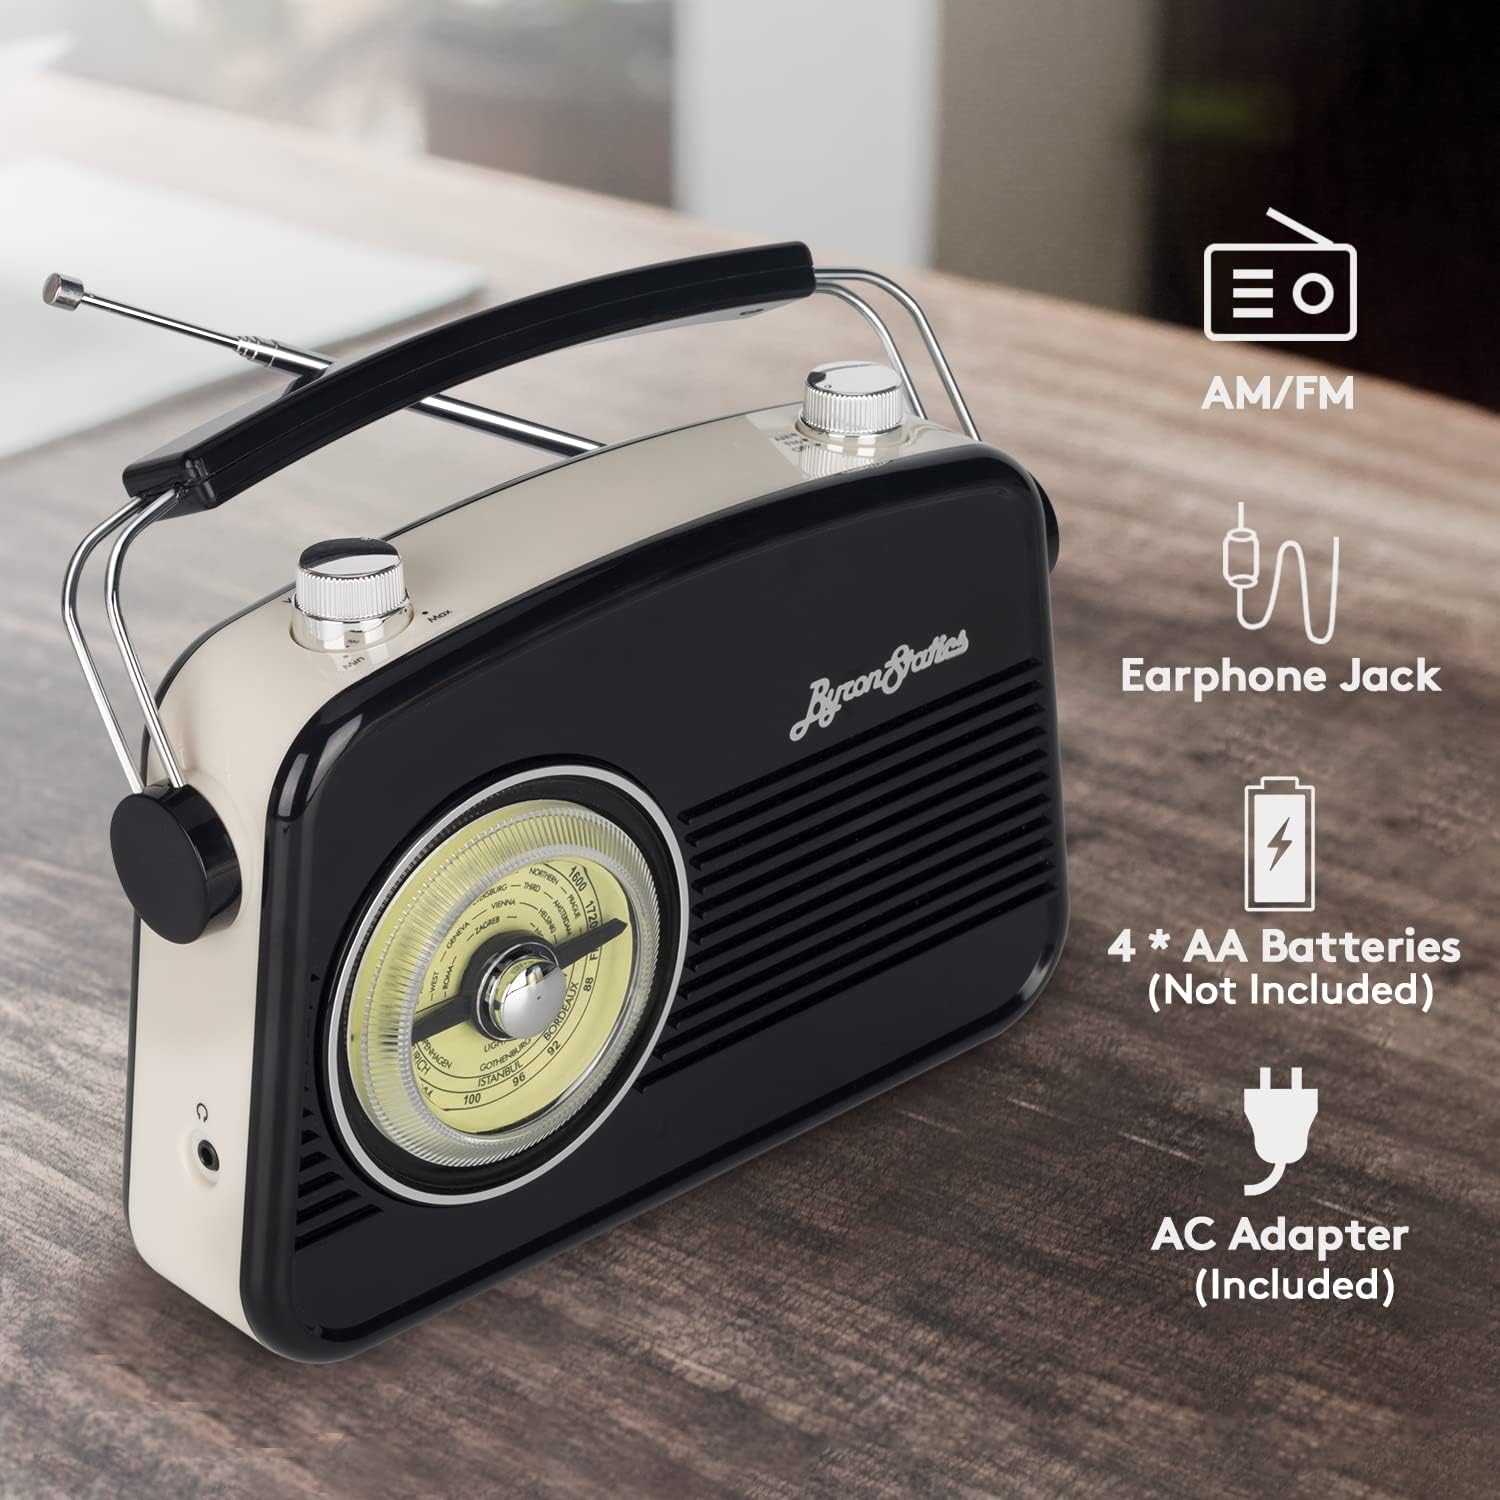 Radio retro Altavoz Bluetooth con sonido claro, radio portátil AM FM r -  VIRTUAL MUEBLES